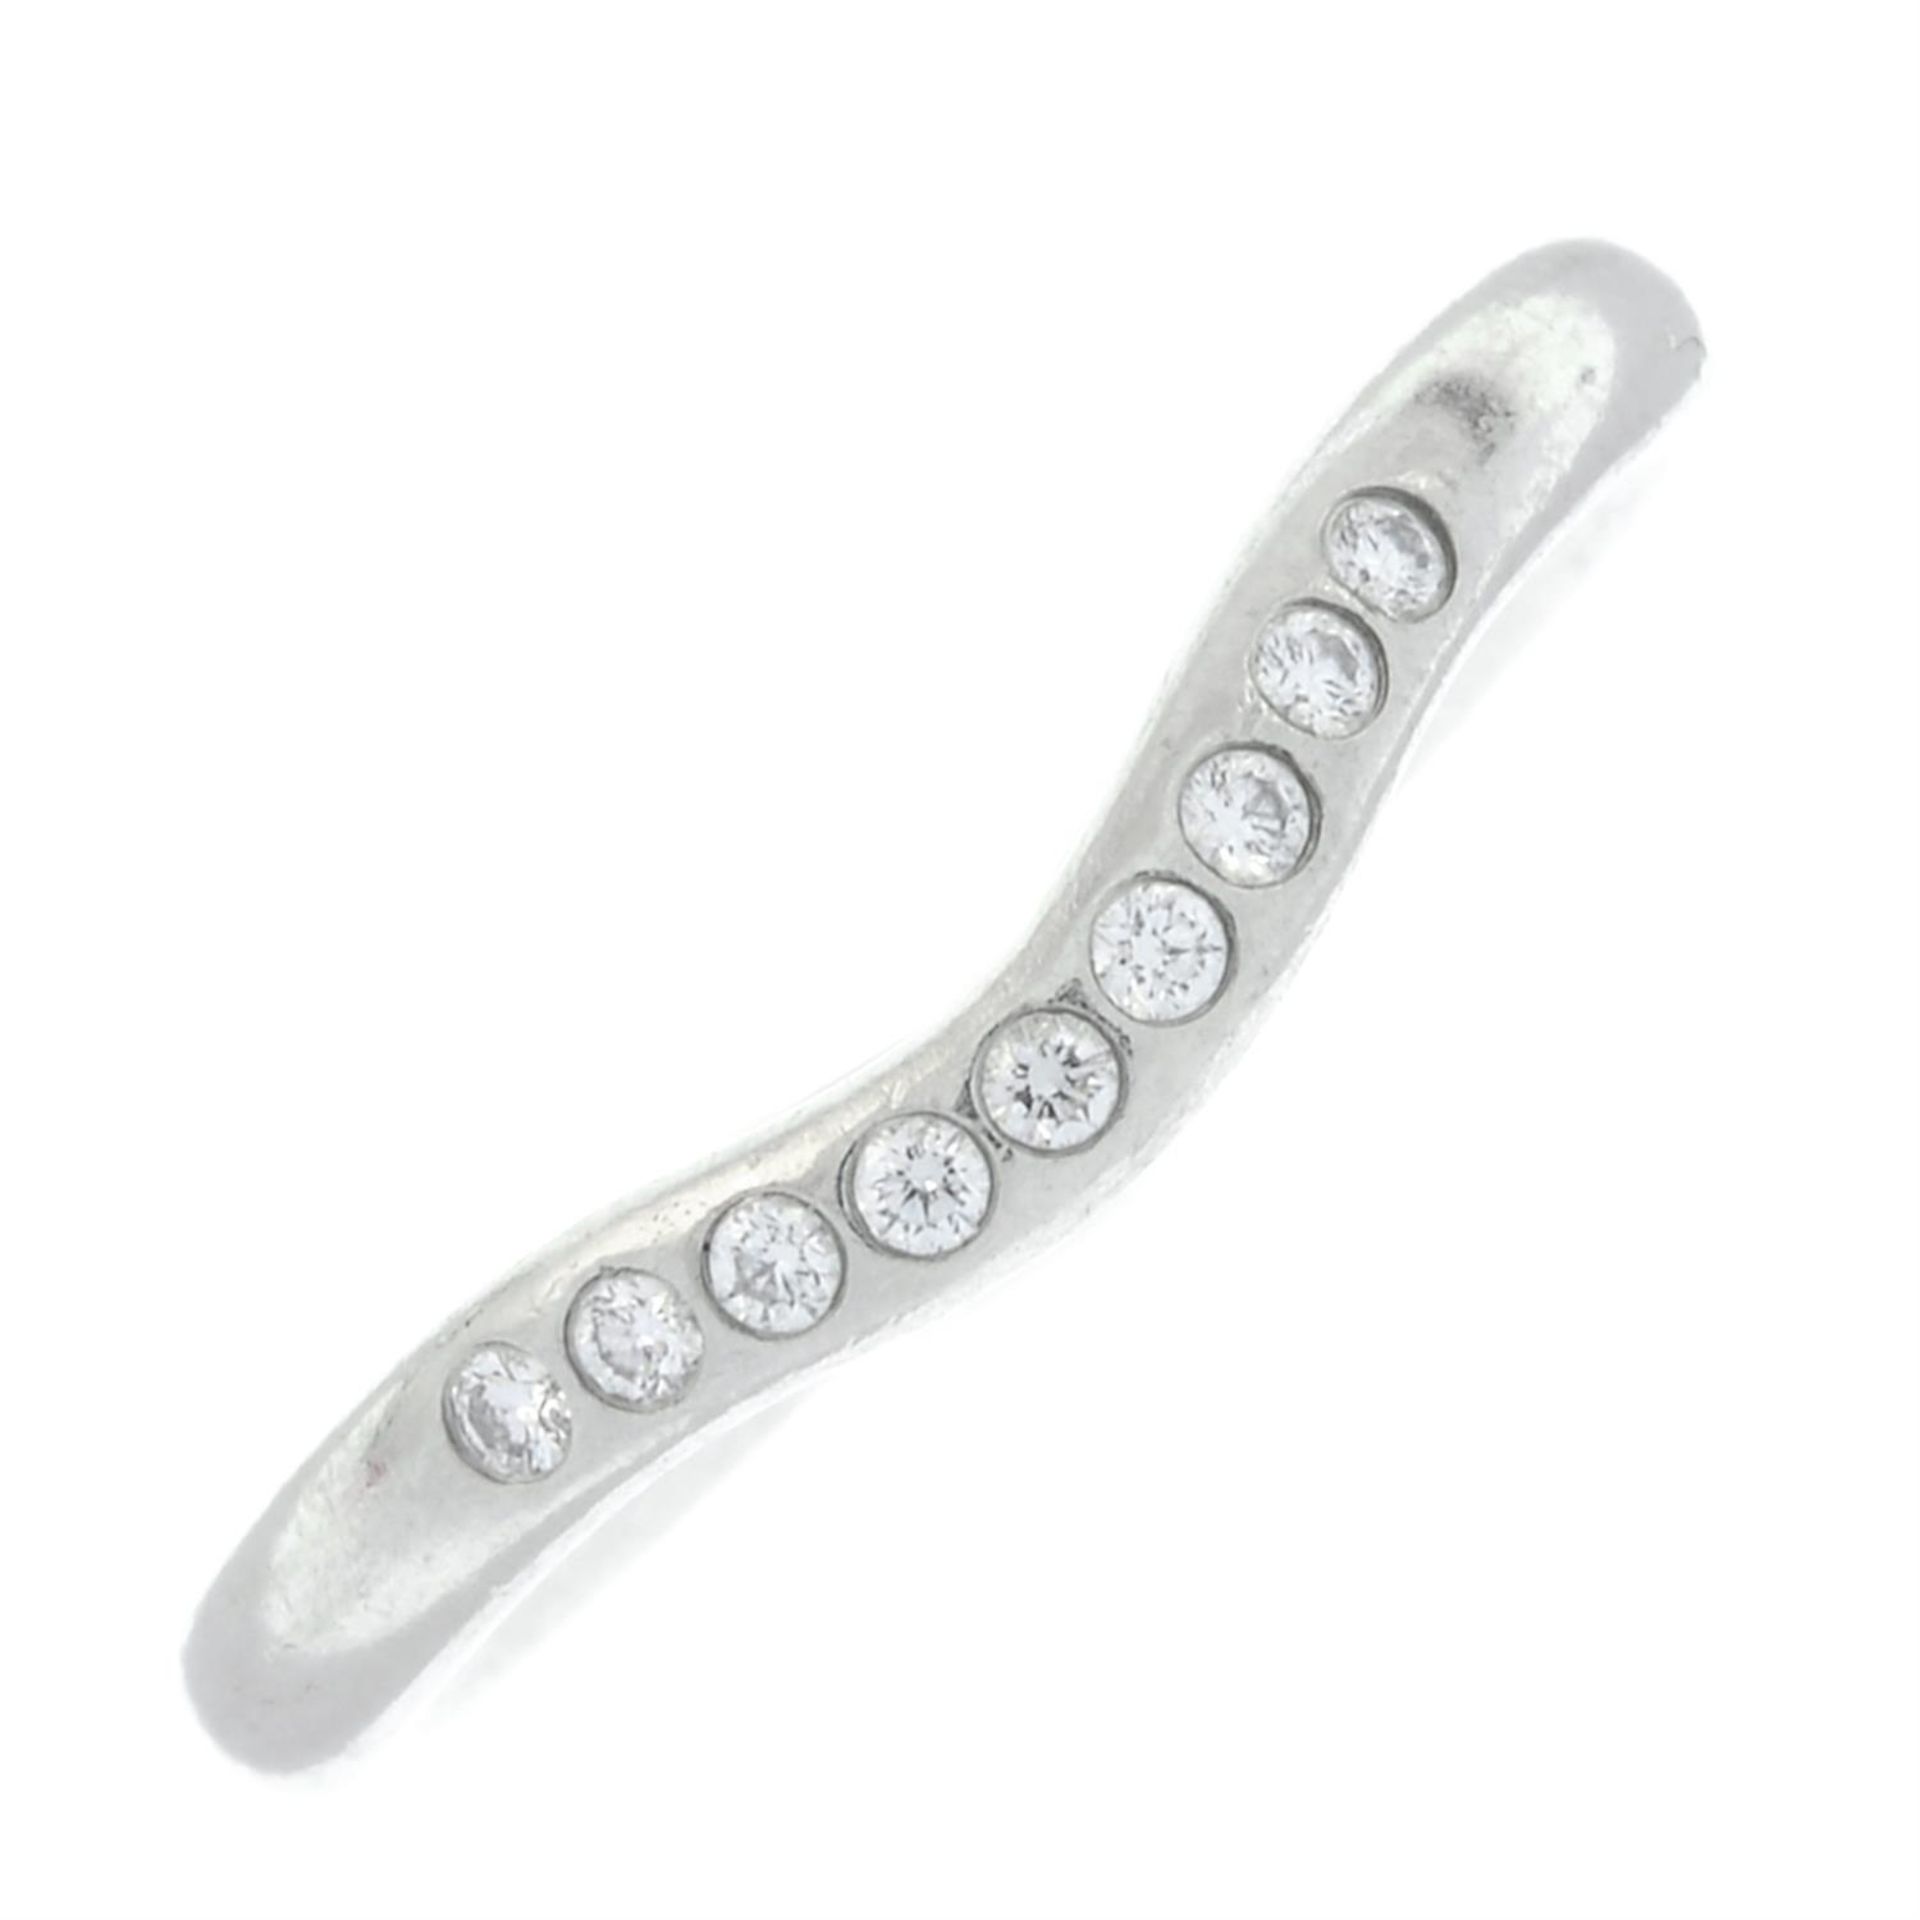 A brilliant-cut diamond chevron ring, by Elsa Peretti for Tiffany & Co.